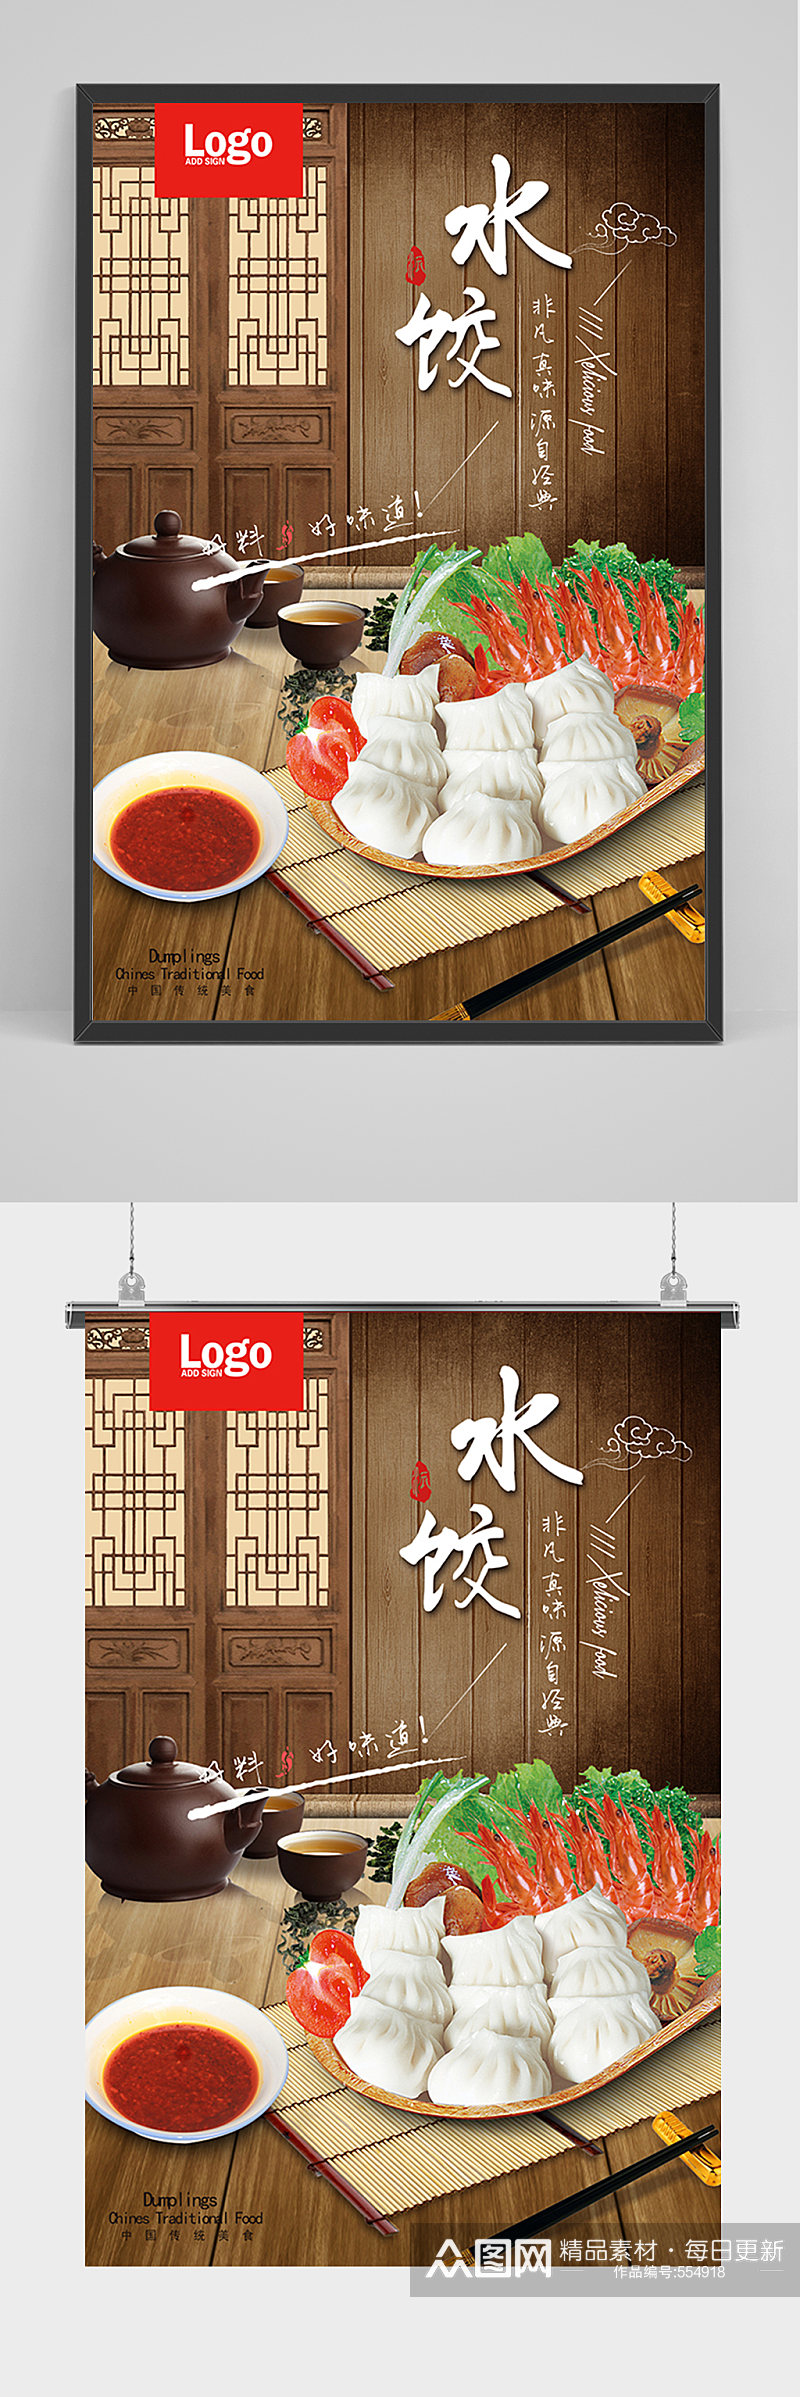 美食水饺宣传海报素材